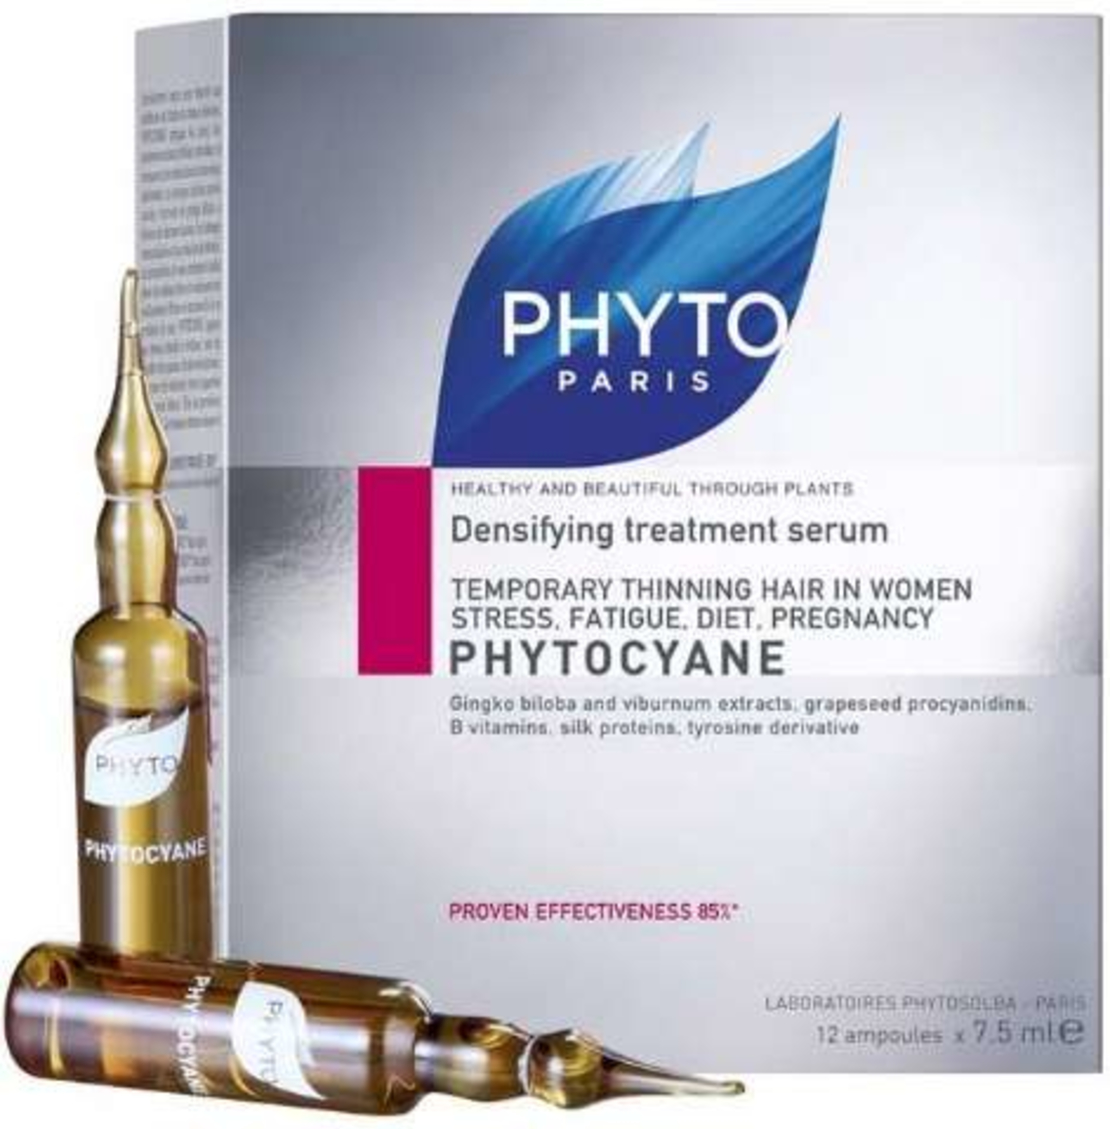 פיטוציאן אמפולות - לשיער דליל אצל נשים Phytocyane